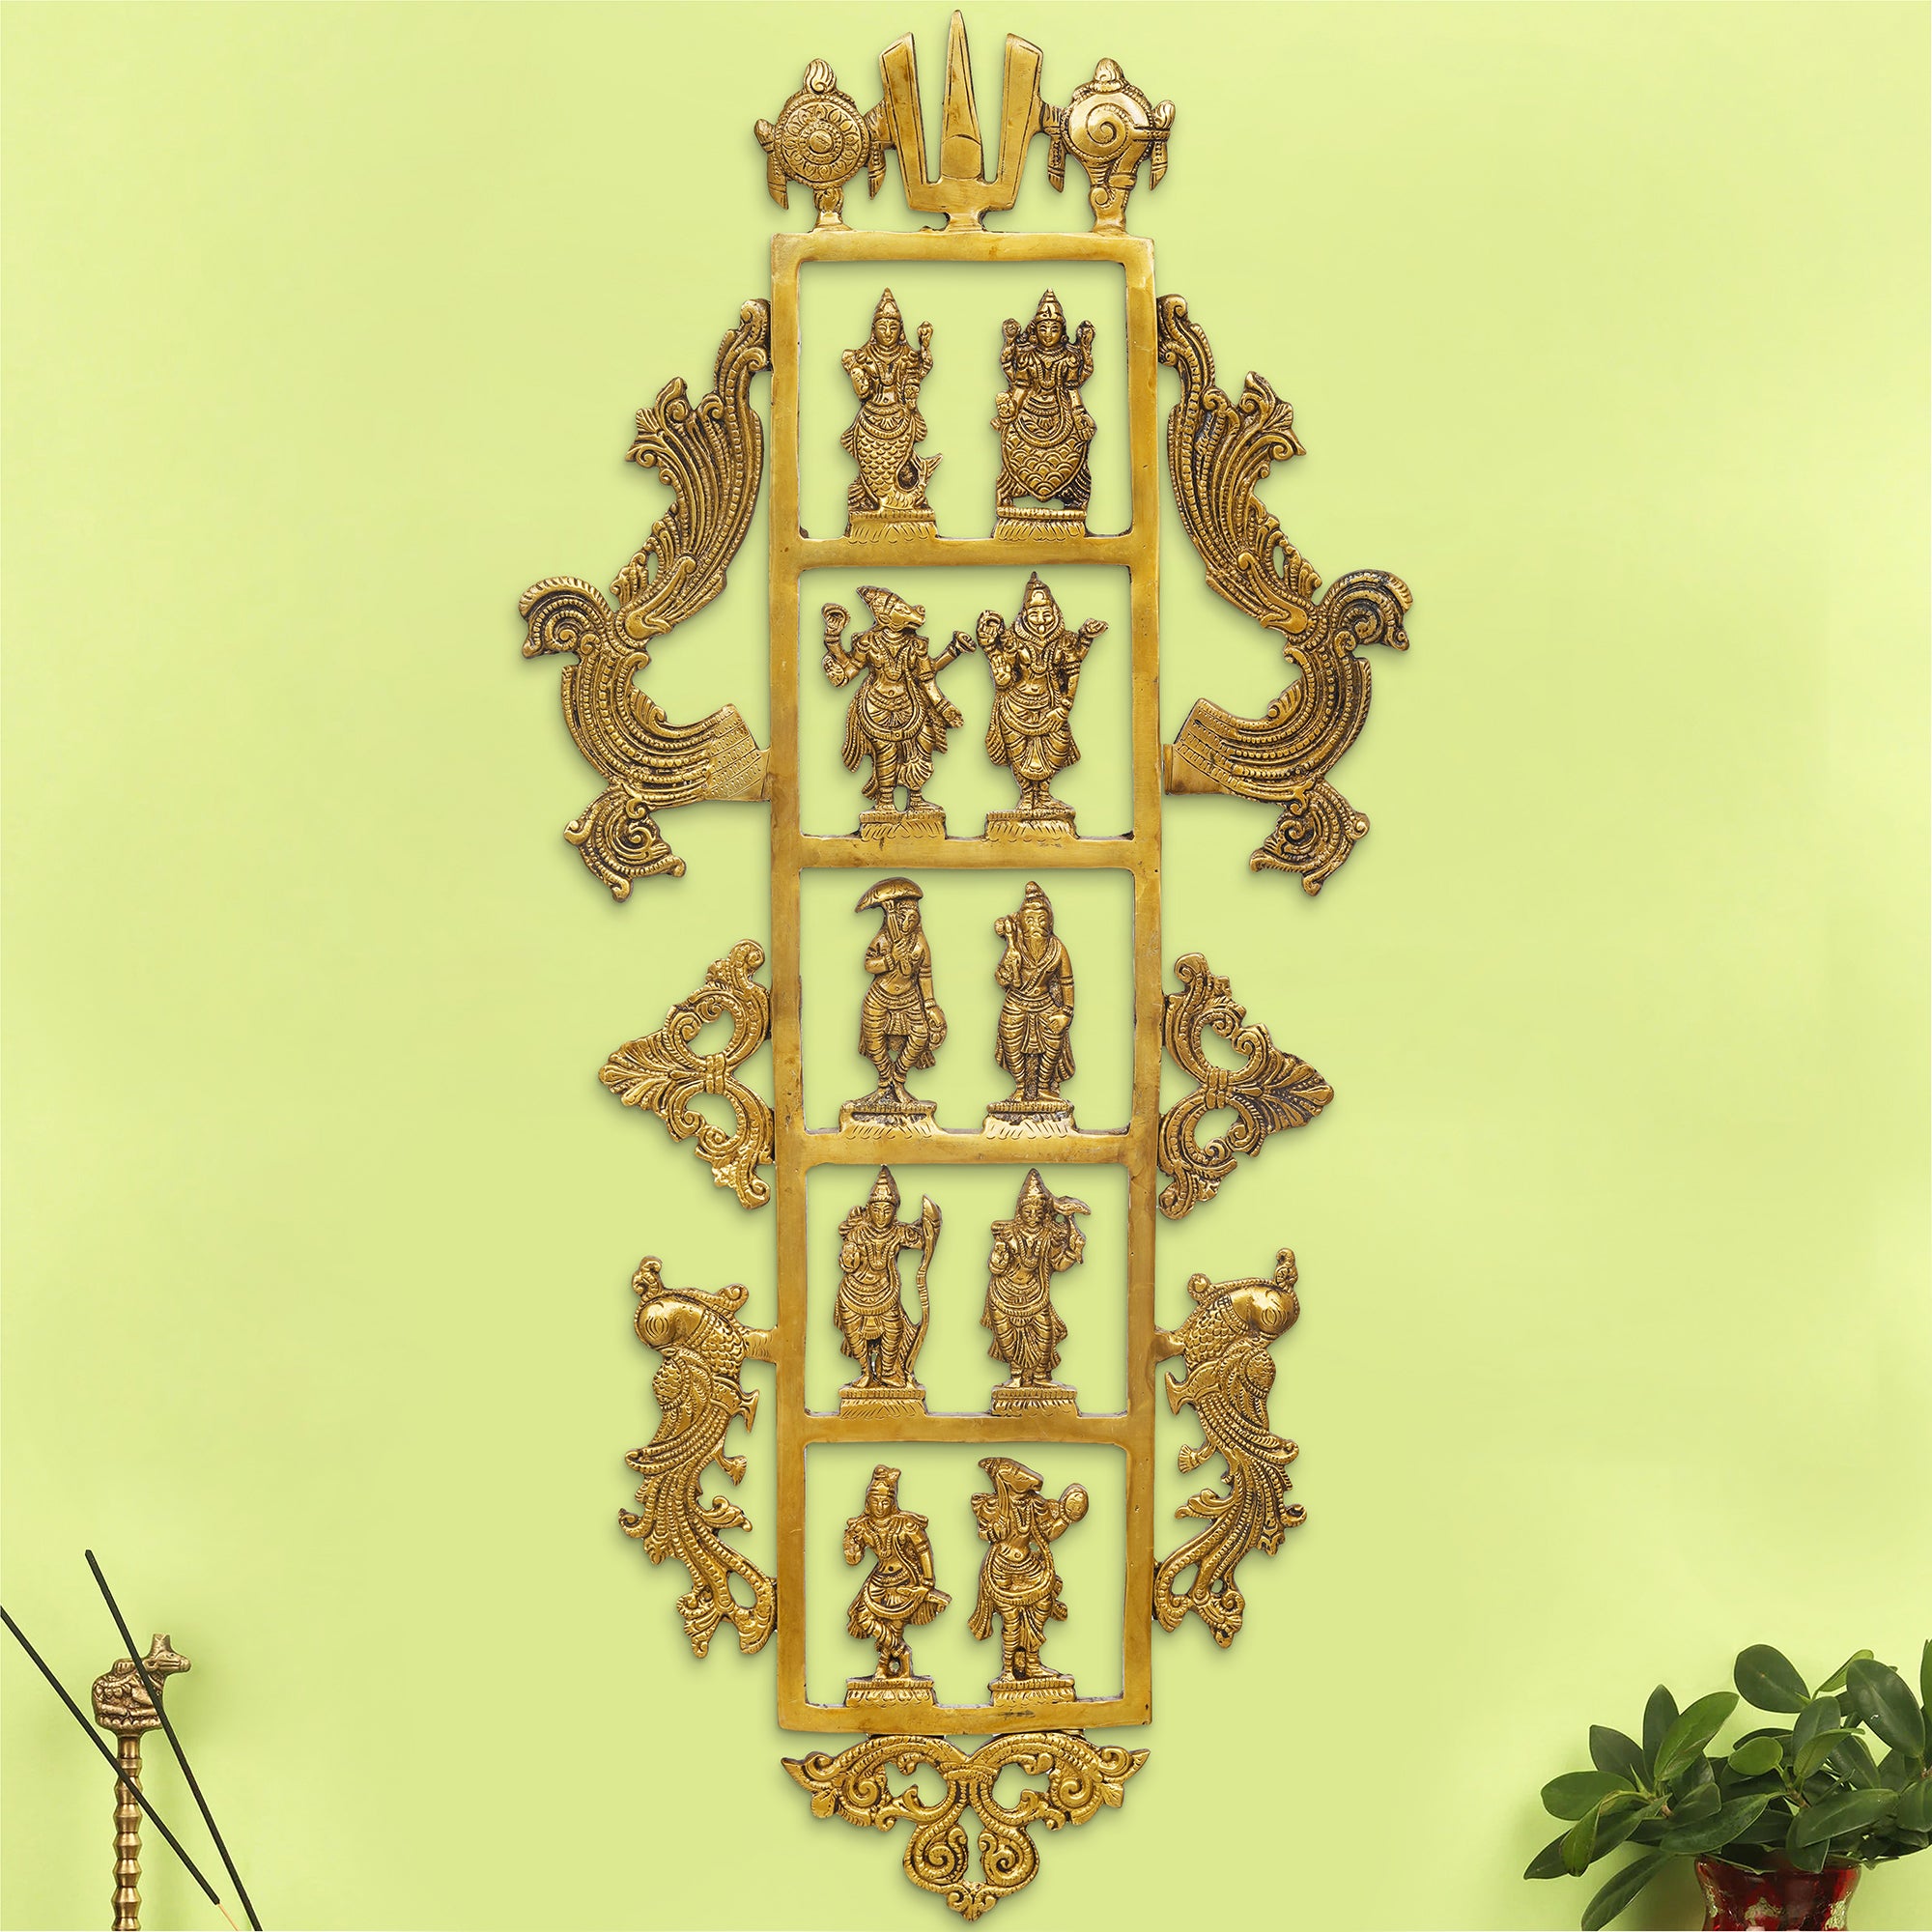 eCraftIndia Golden Brass Lord Vishnu Dashavatara - Ten Incarnations of Vishnu Religious Wall Hanging 4